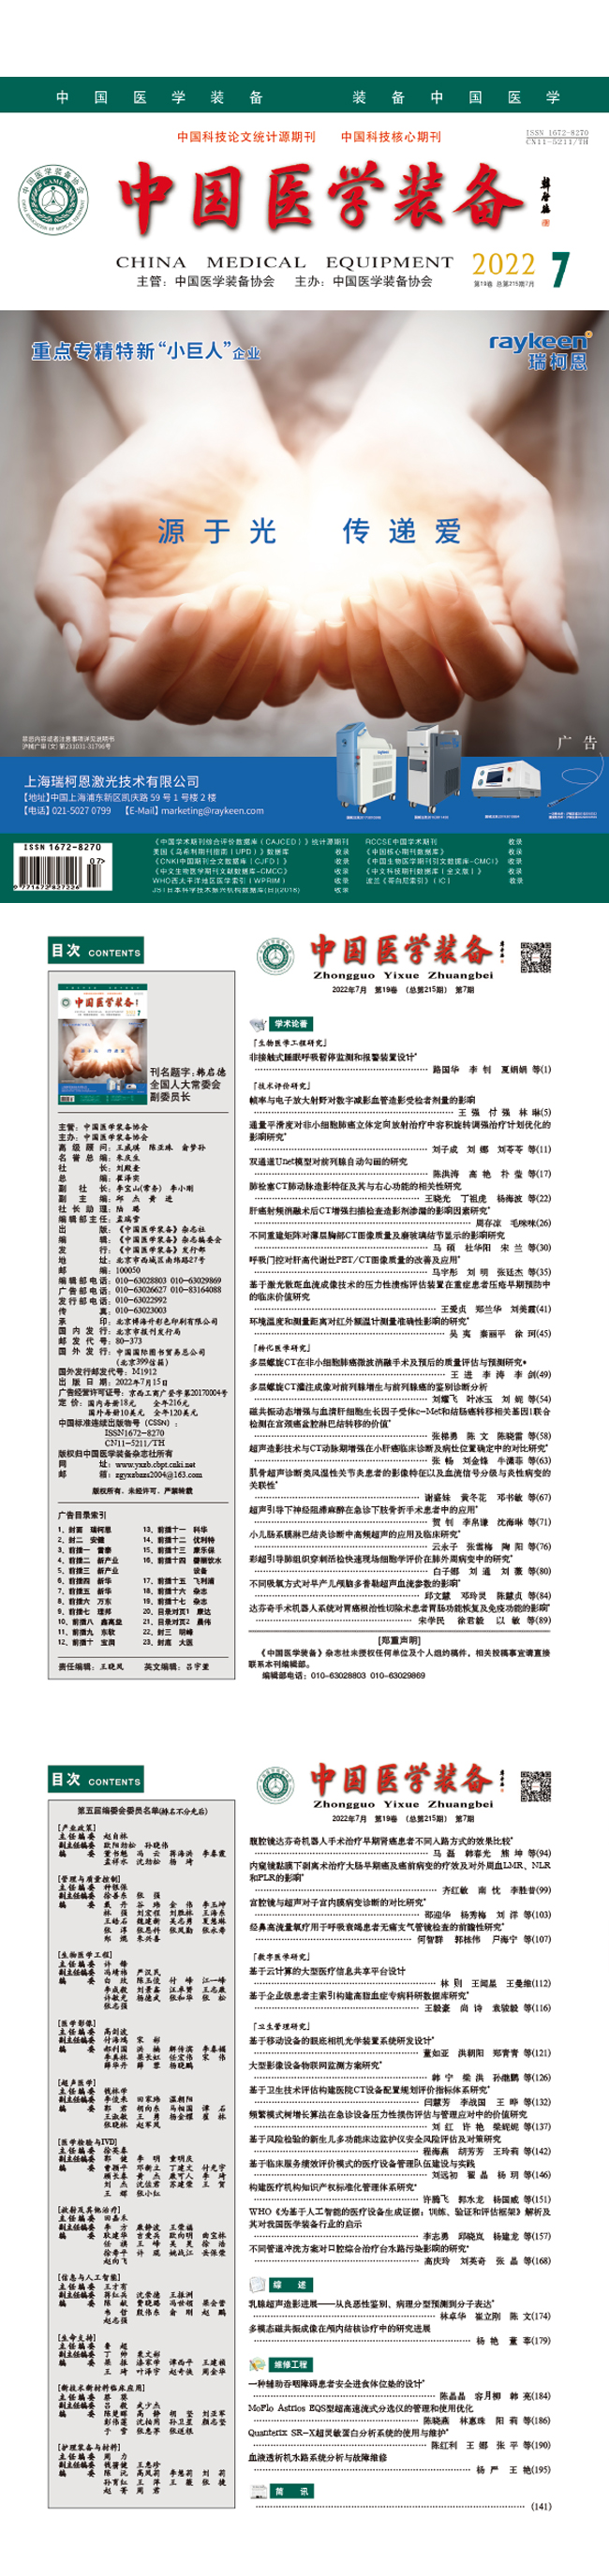 《中国医学装备》2022年7期出版(图1)